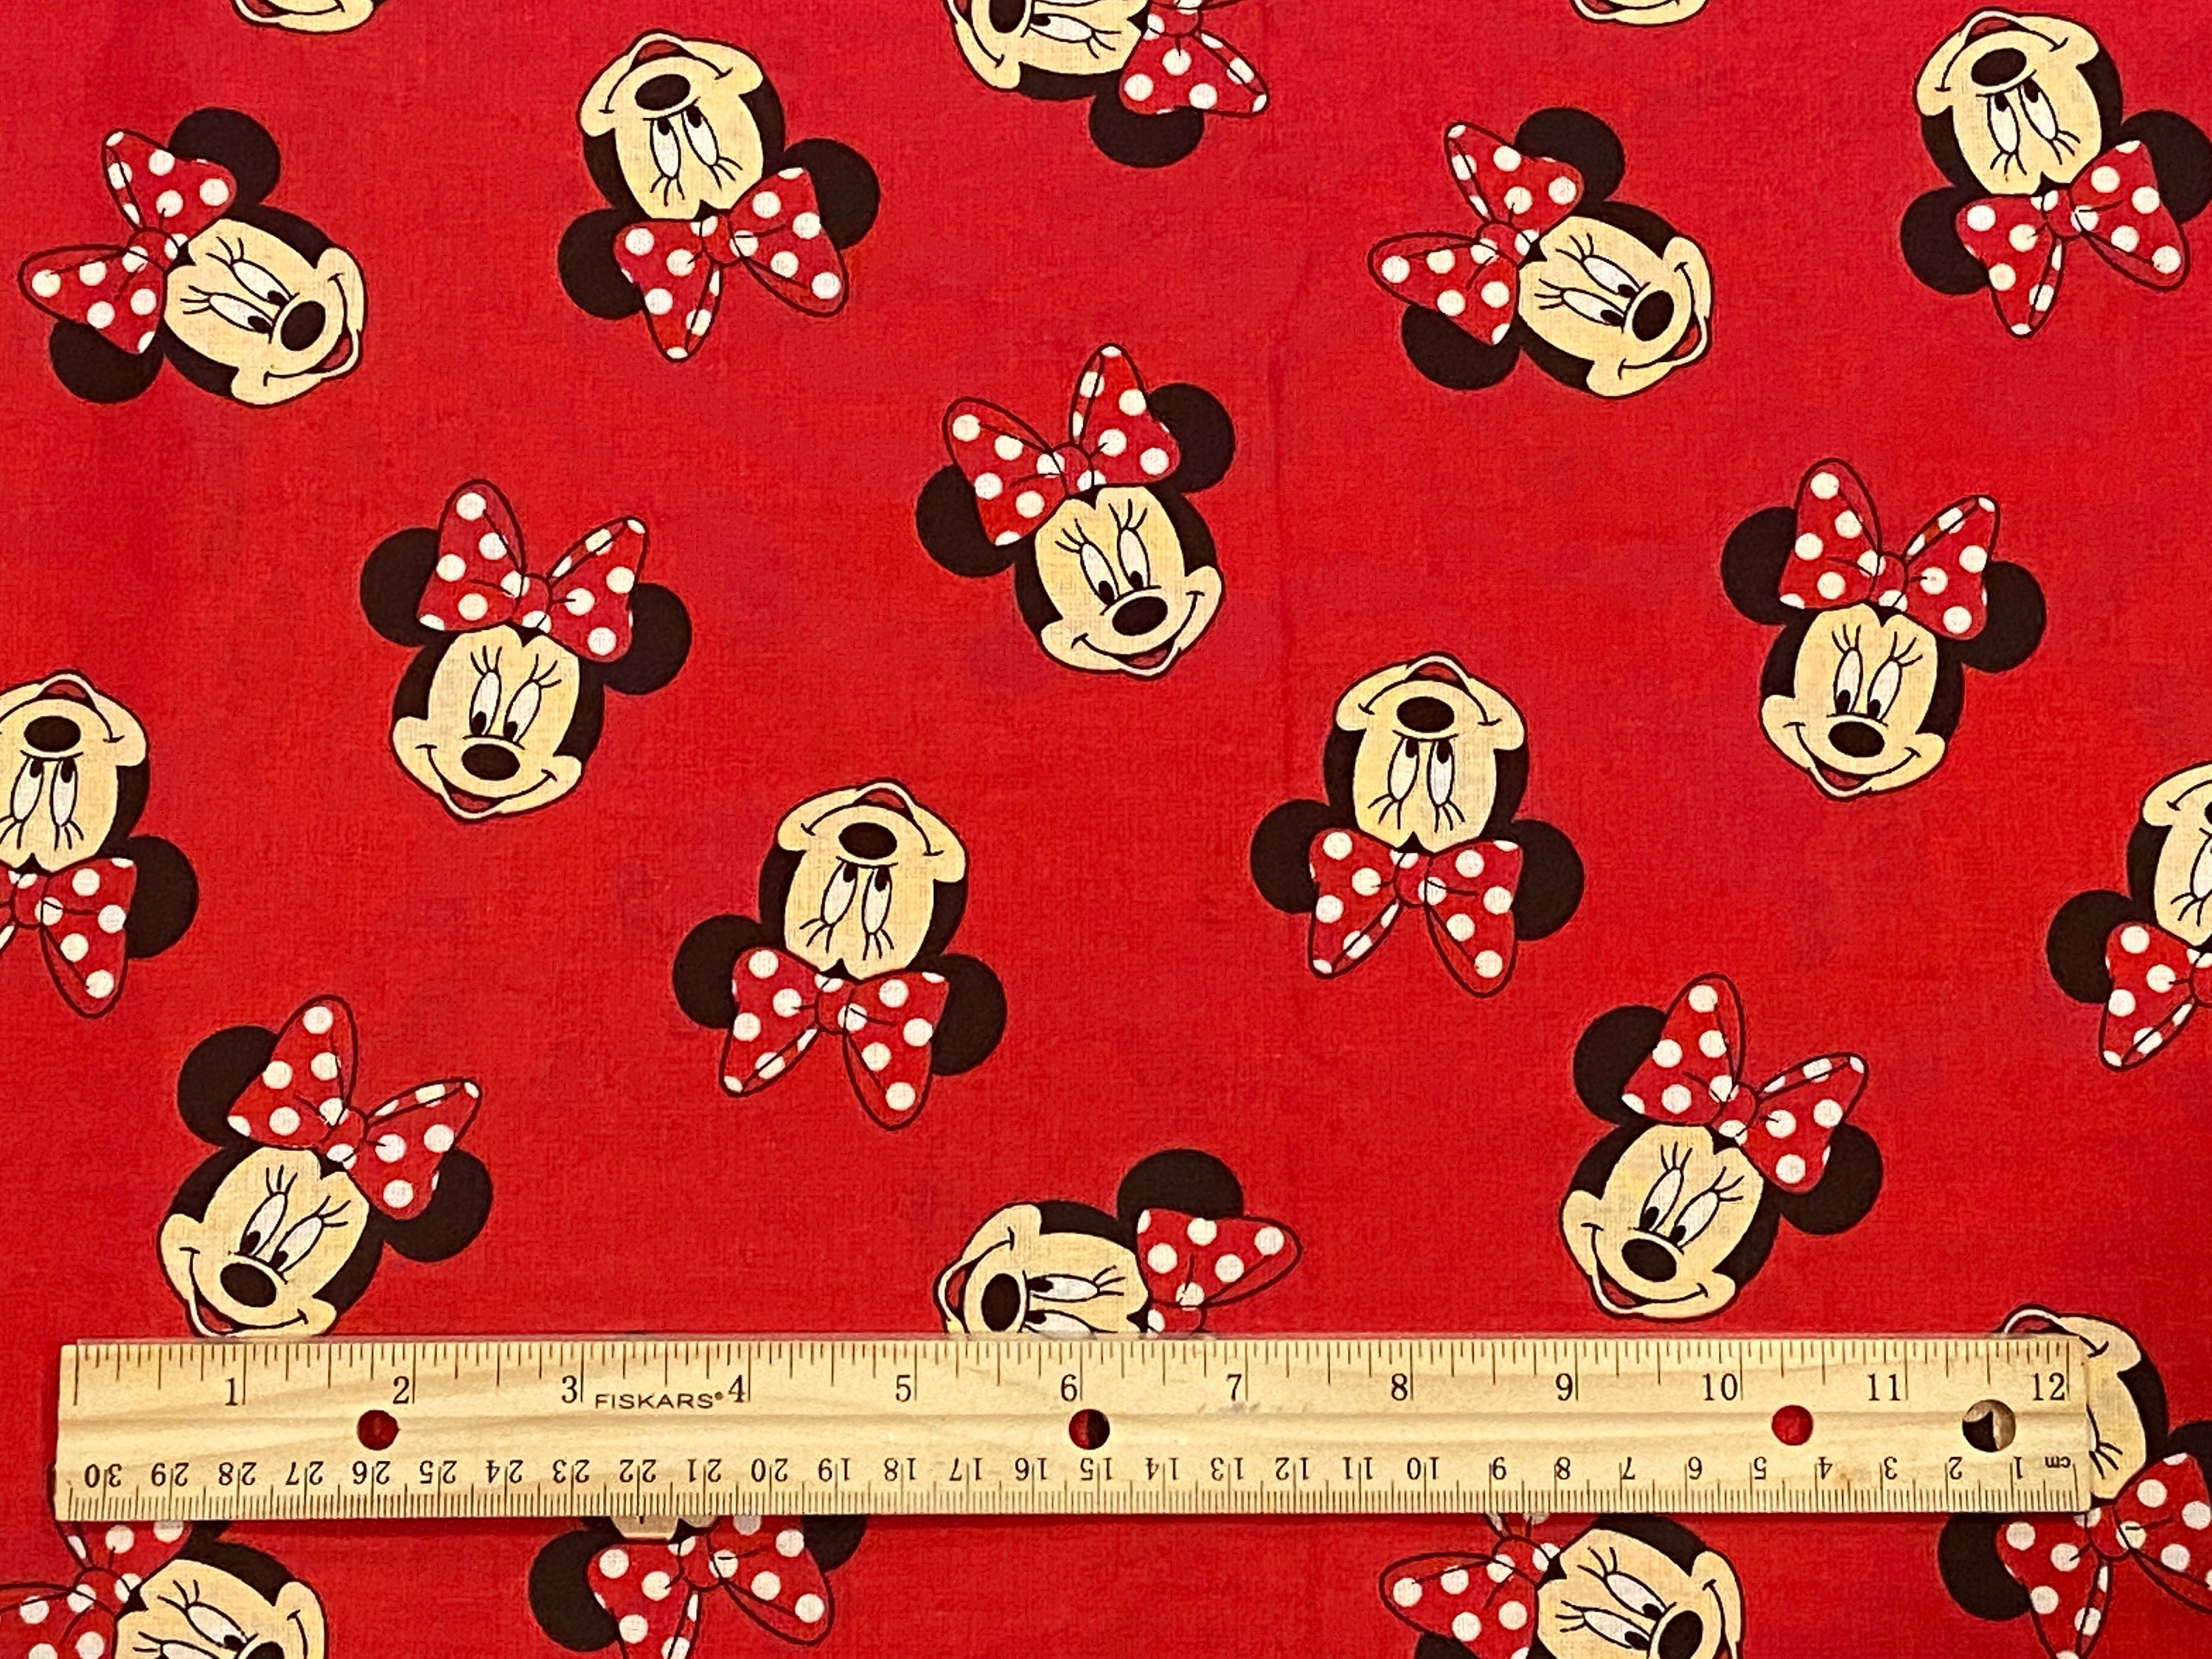 Bức hình nền của Minnie Mouse được thiết kế trên nền vải đỏ sẽ dẫn đến sự phấn khích và tò mò cho bất kỳ ai xem. Mỗi chi tiết sẽ được thể hiện đầy đủ, cho phép bạn tận hưởng sự nổi tiếng của Minnie Mouse trên nền đỏ đầy ấm áp.